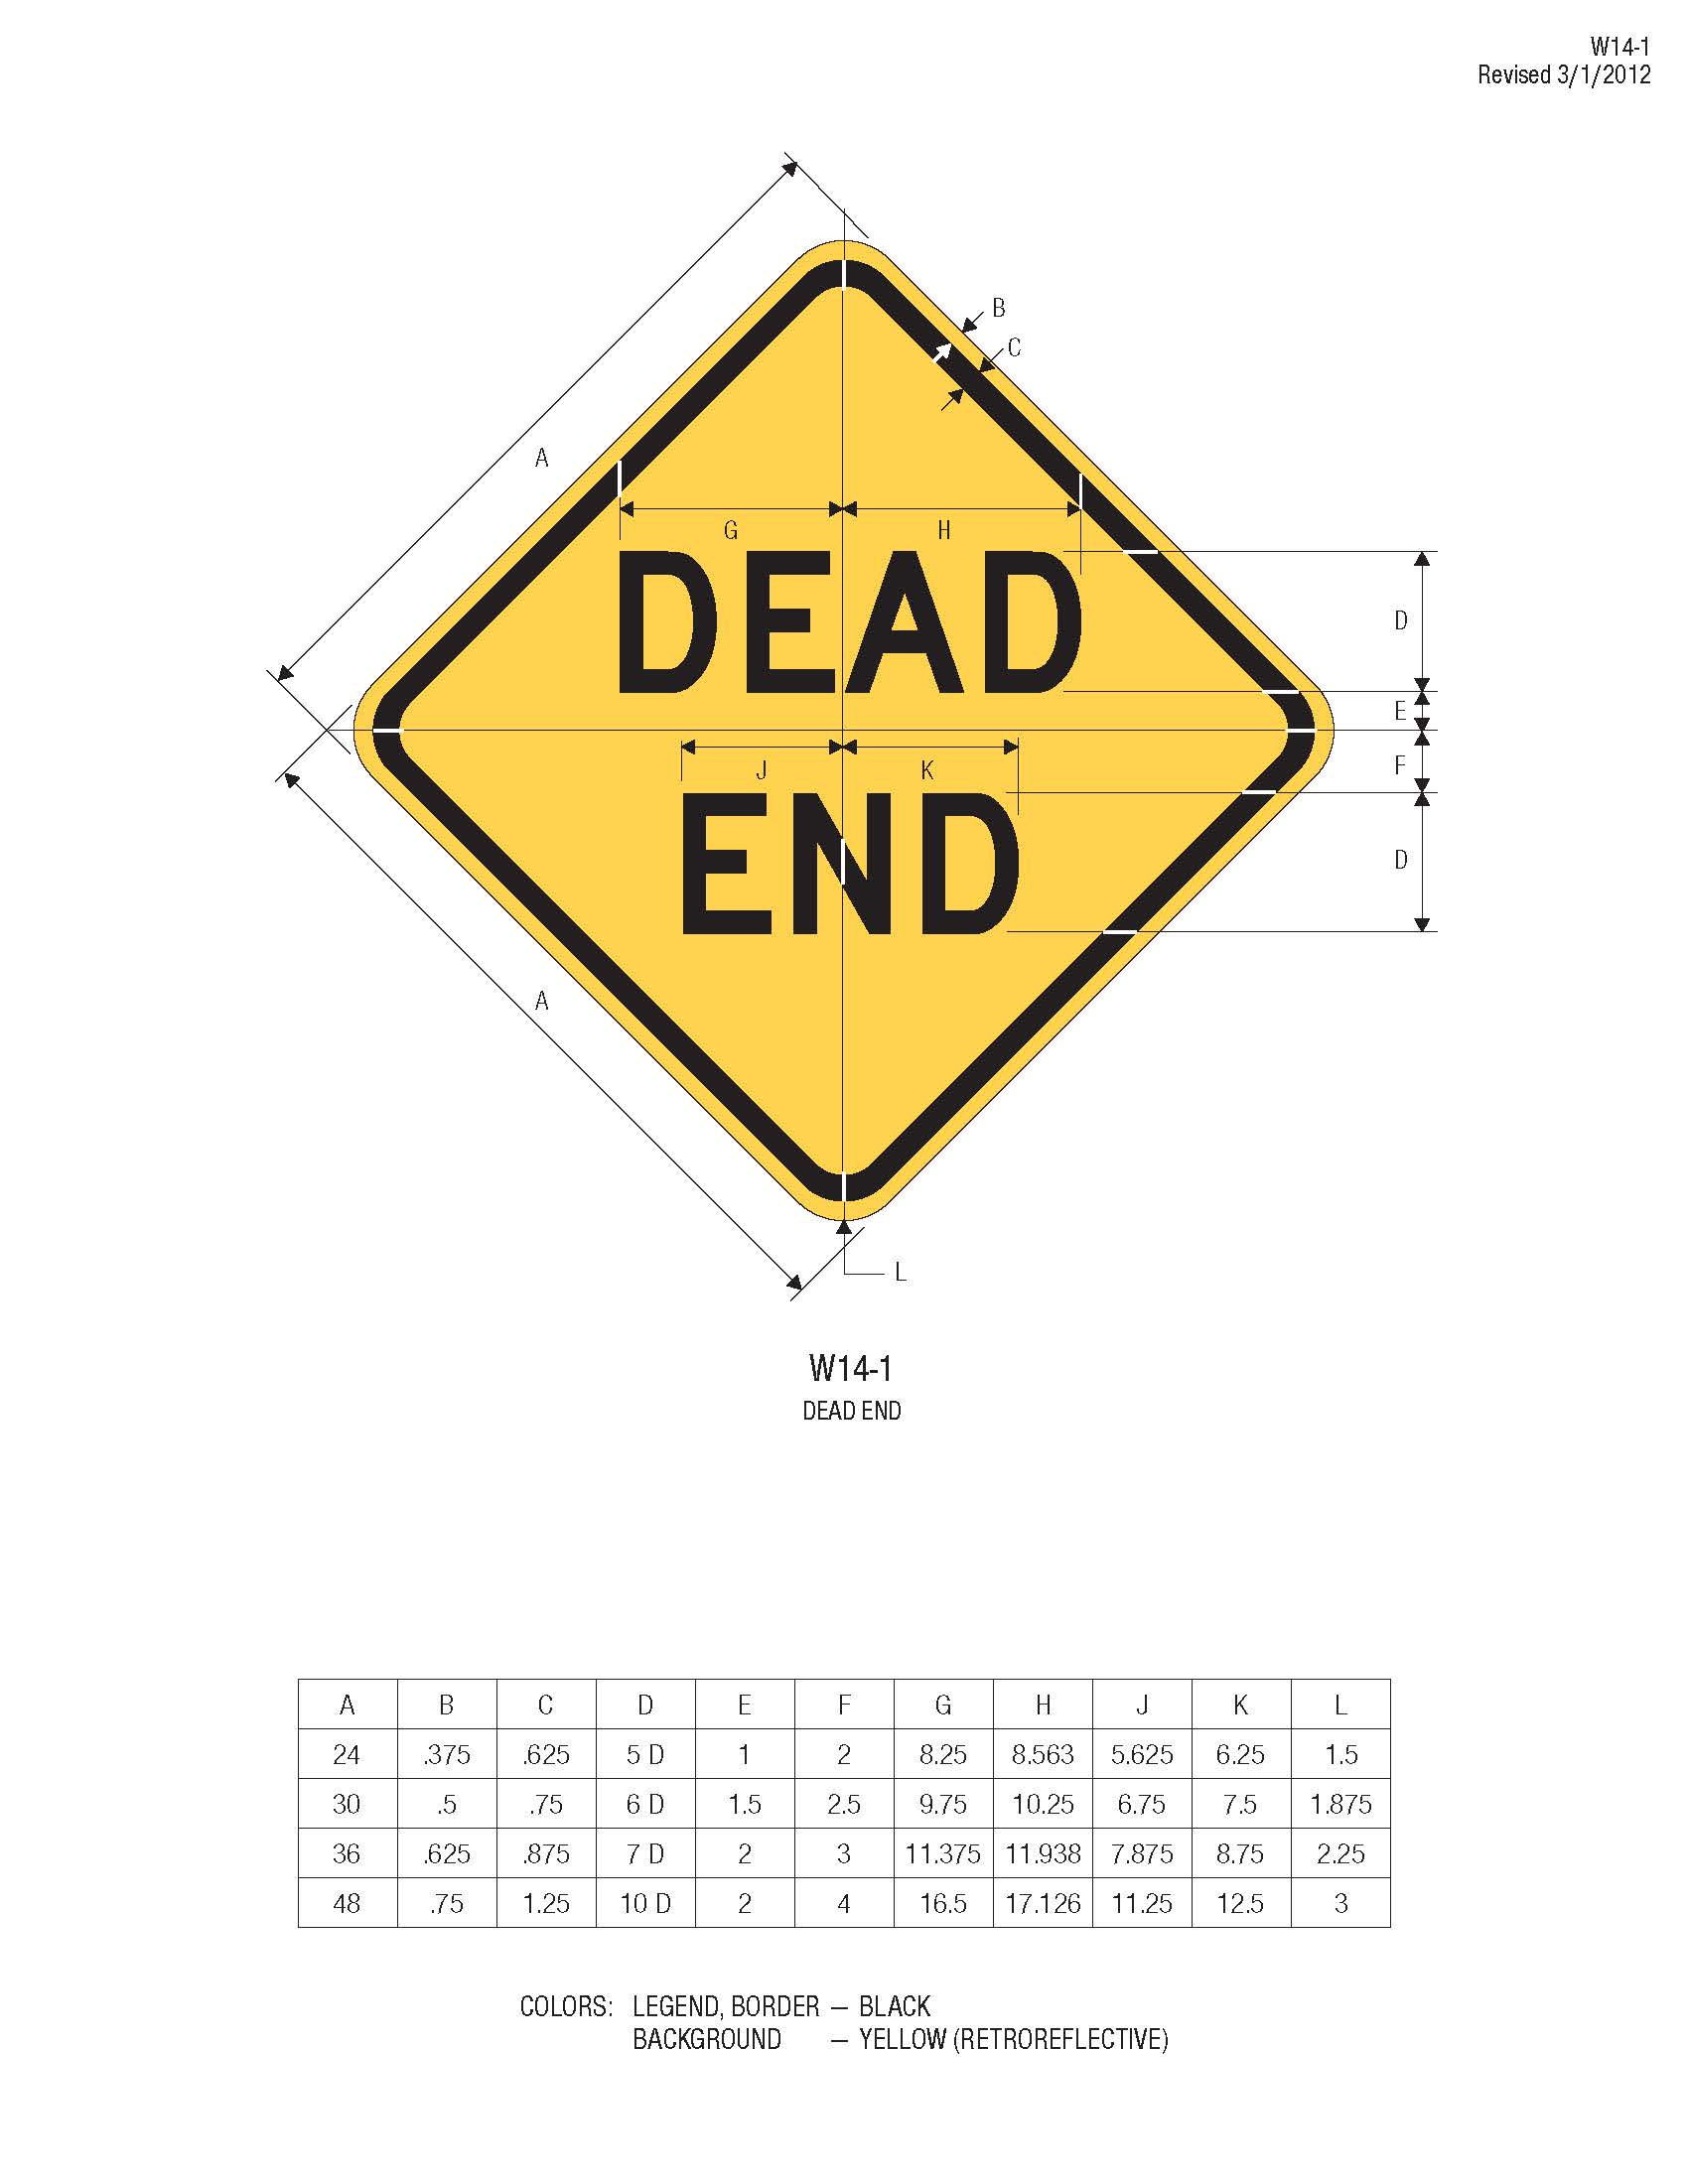 road hazard sign diamond